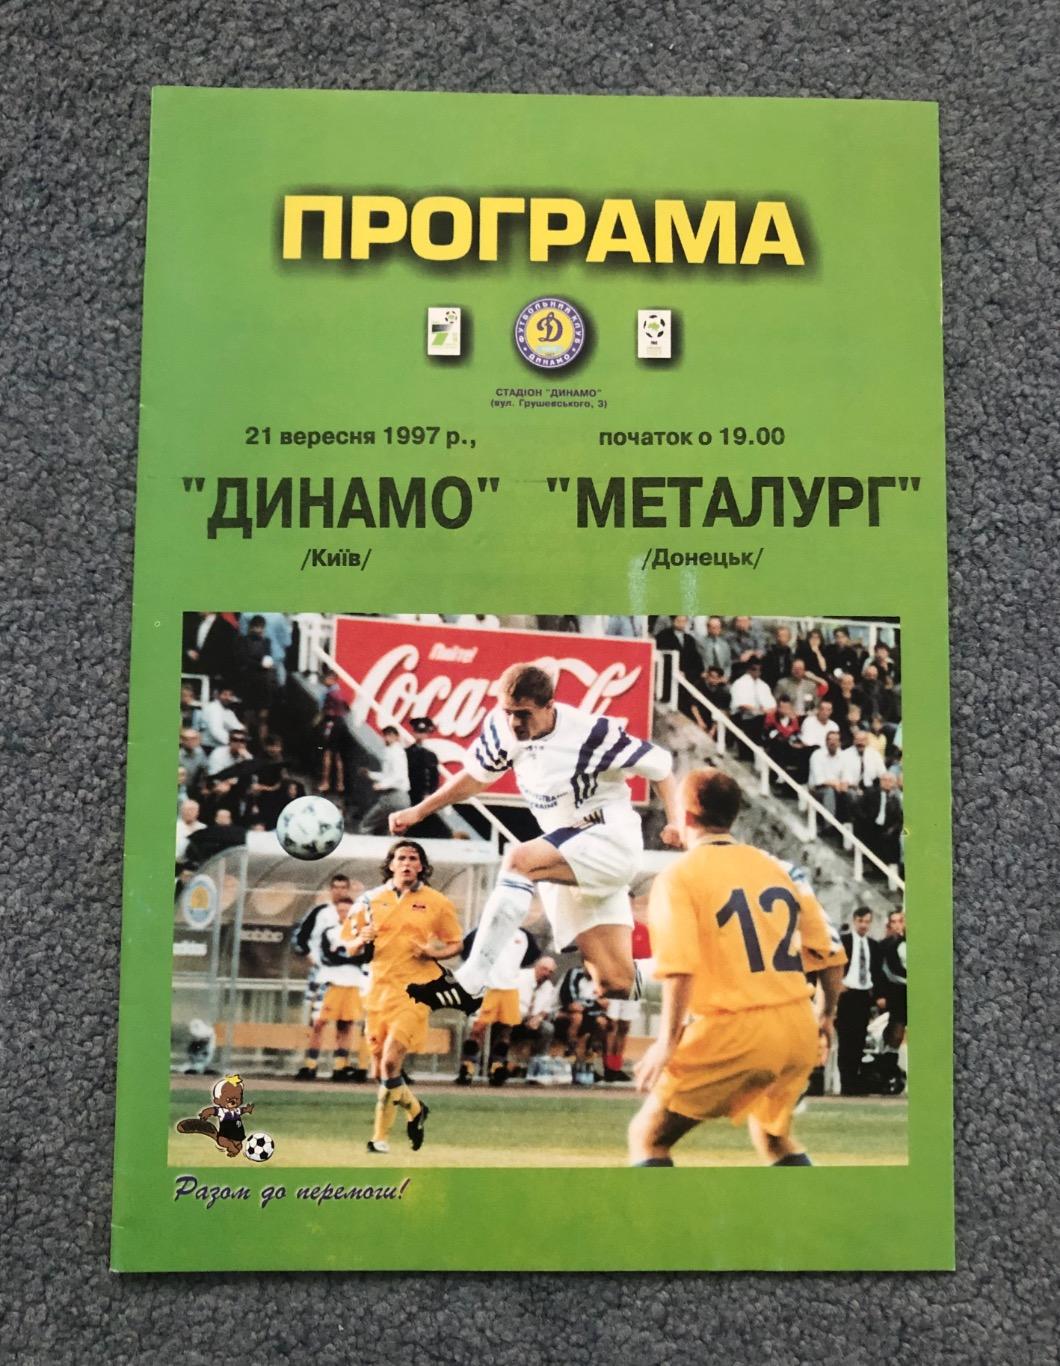 Динамо Киев - Металлург Донецк, 21.09.1997